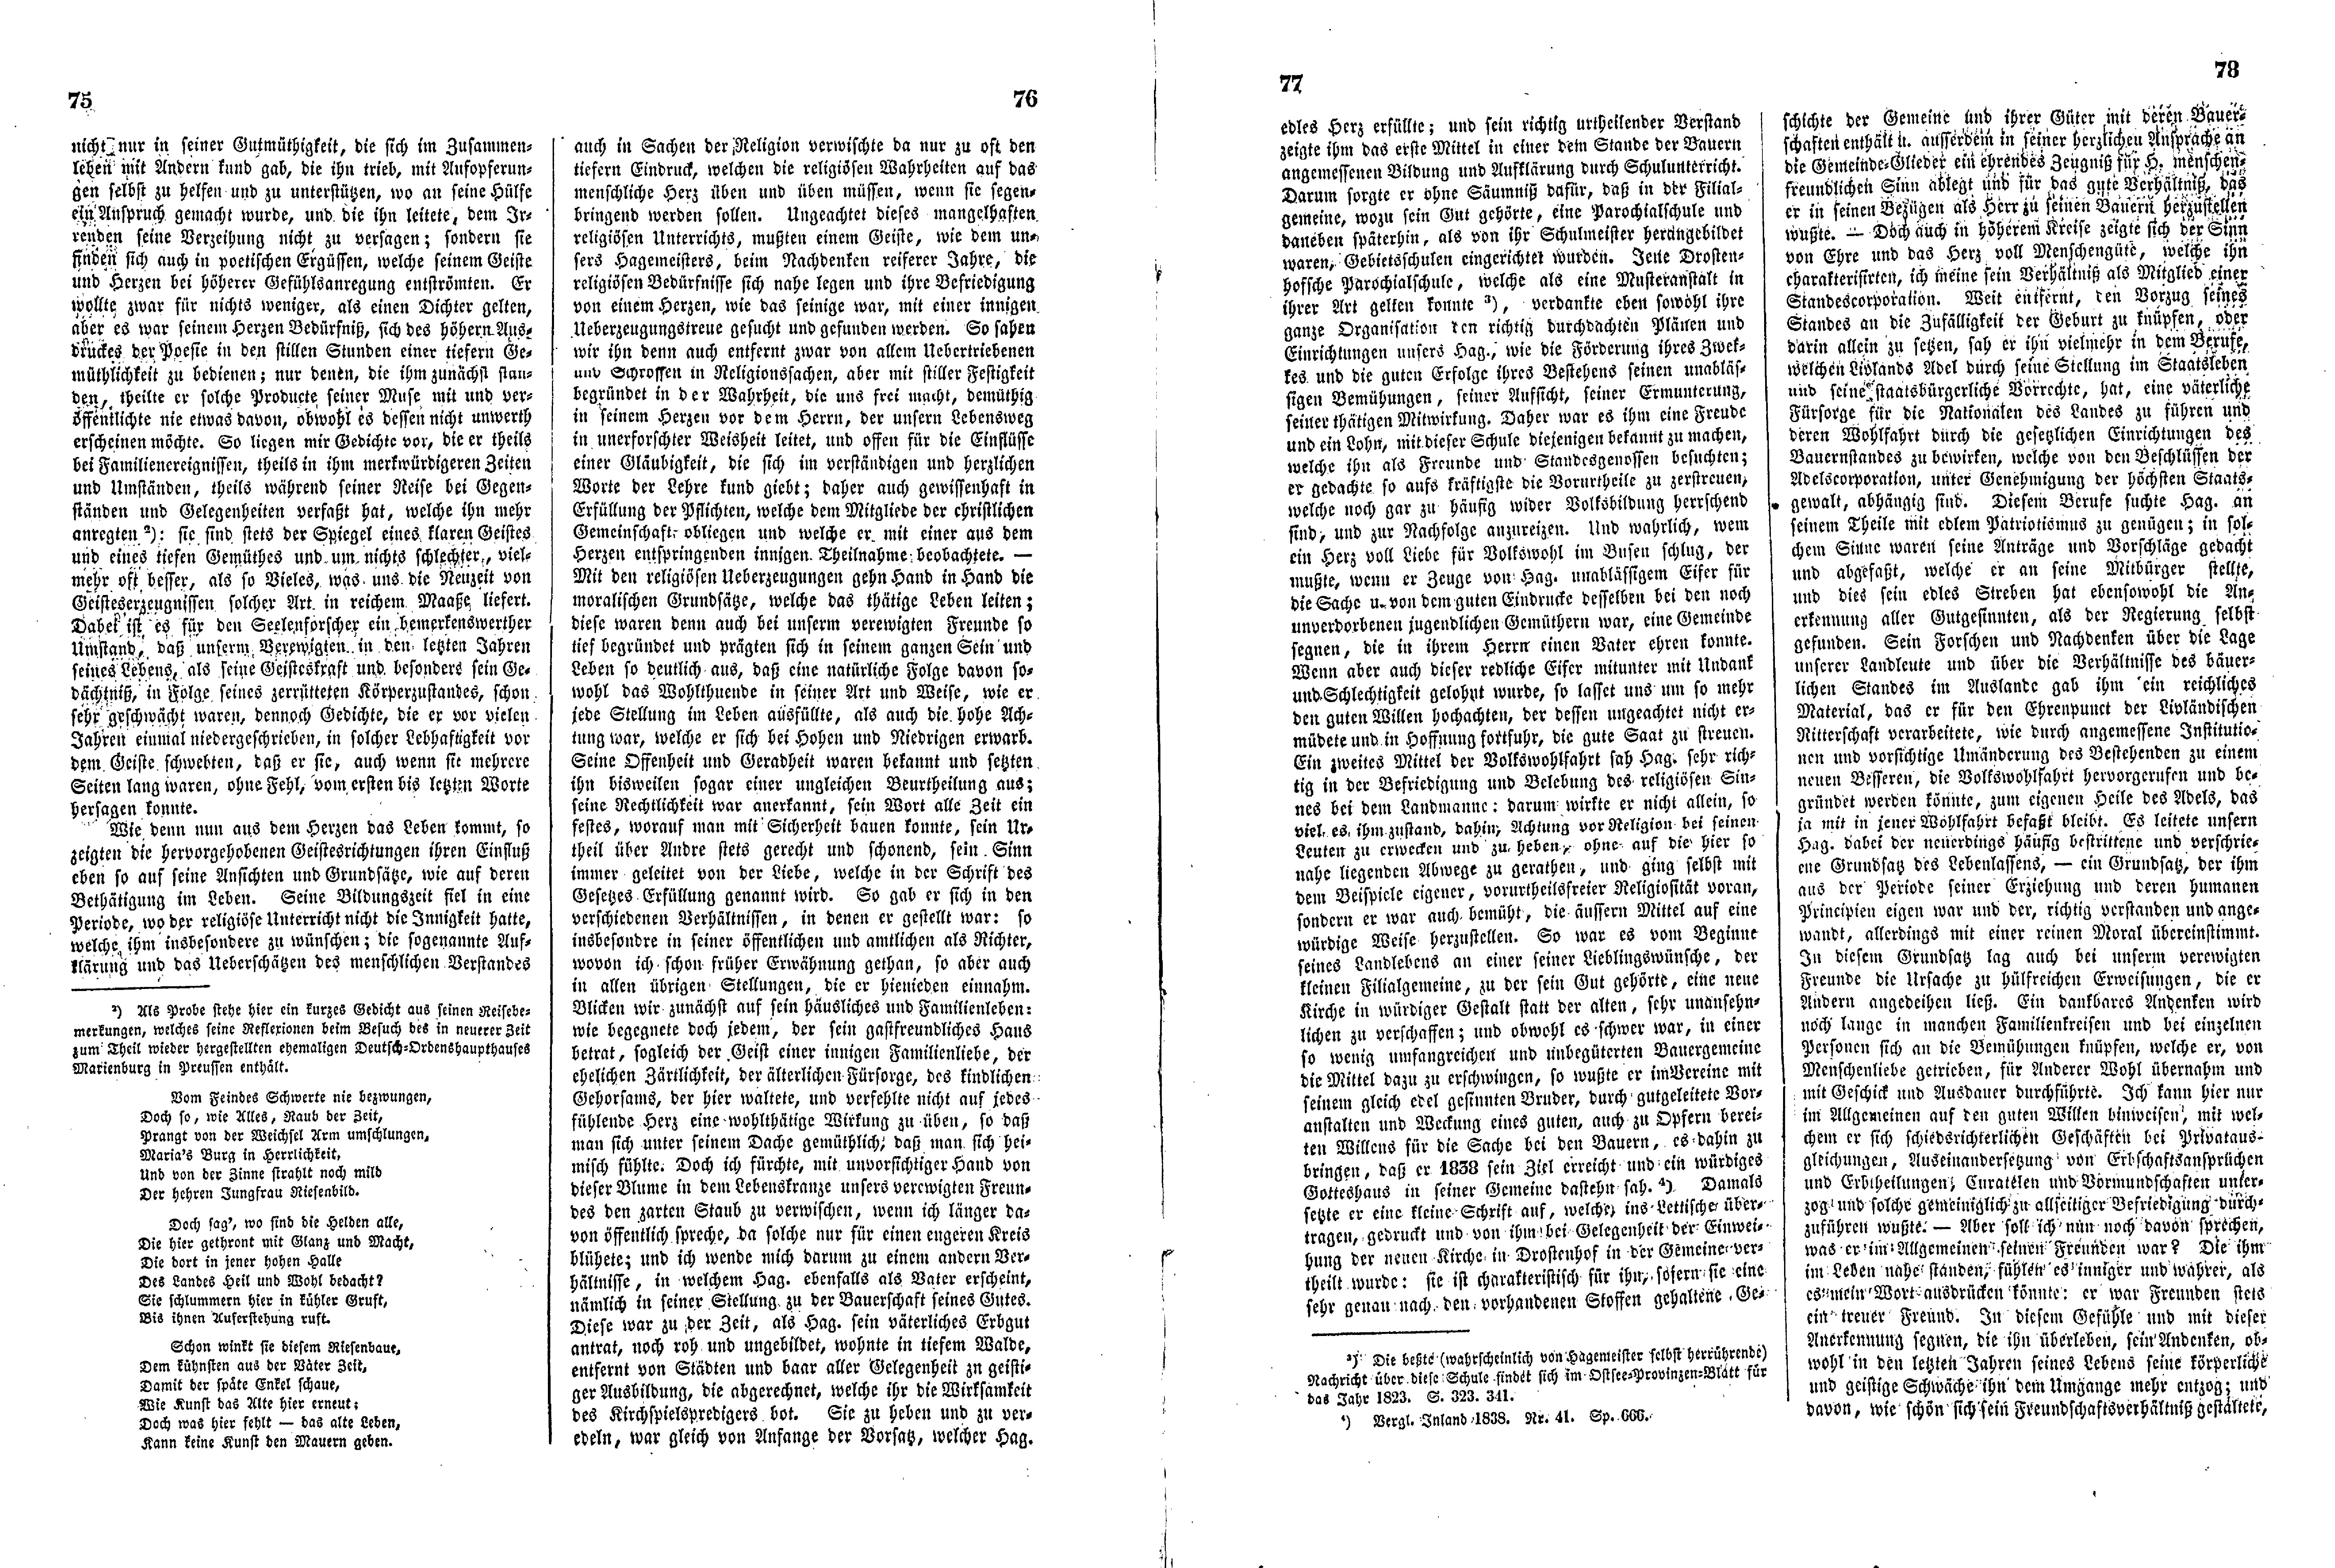 Das Inland [11] (1846) | 24. (75-78) Põhitekst